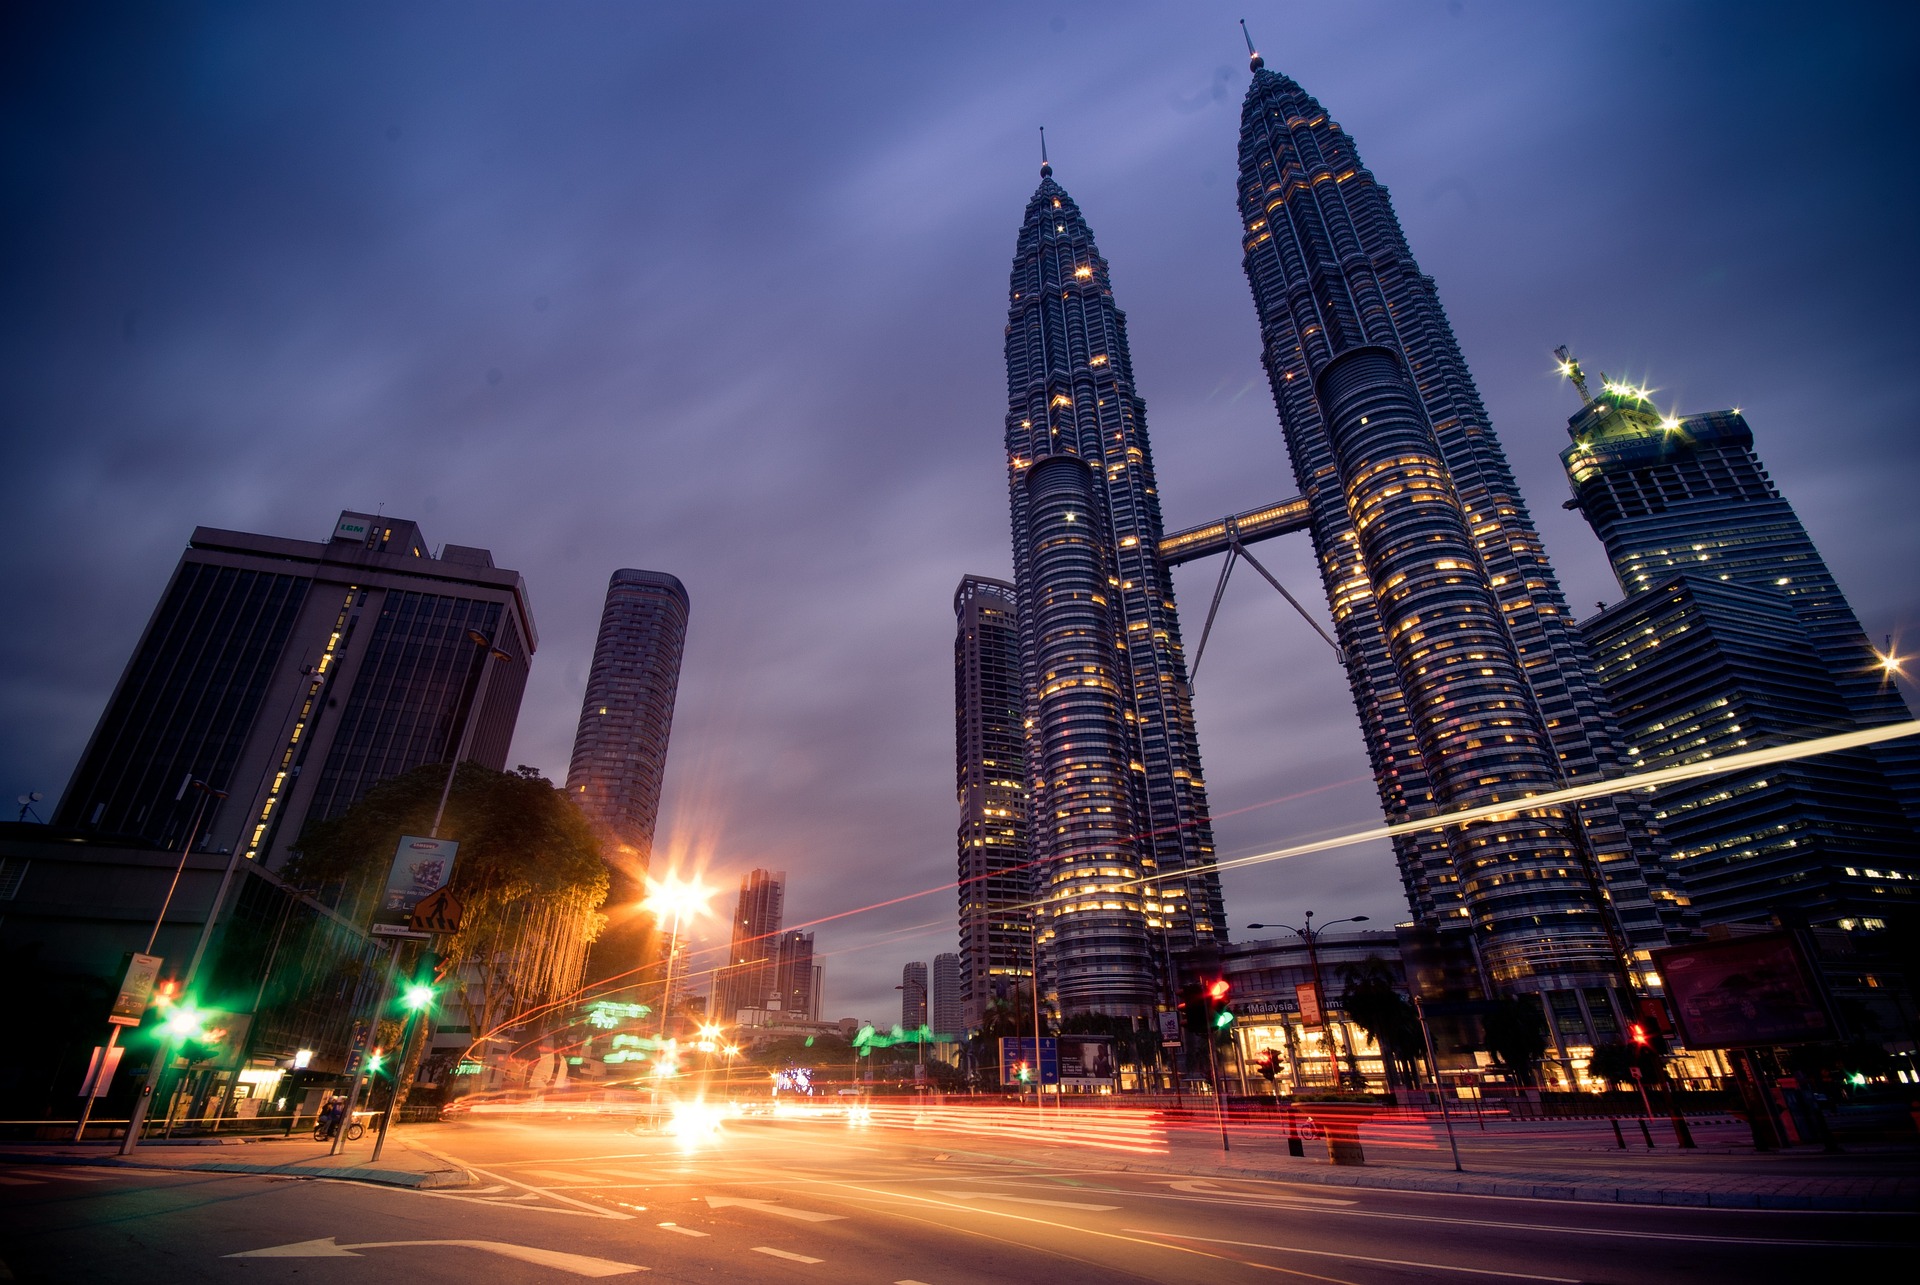 twin towers malaysia